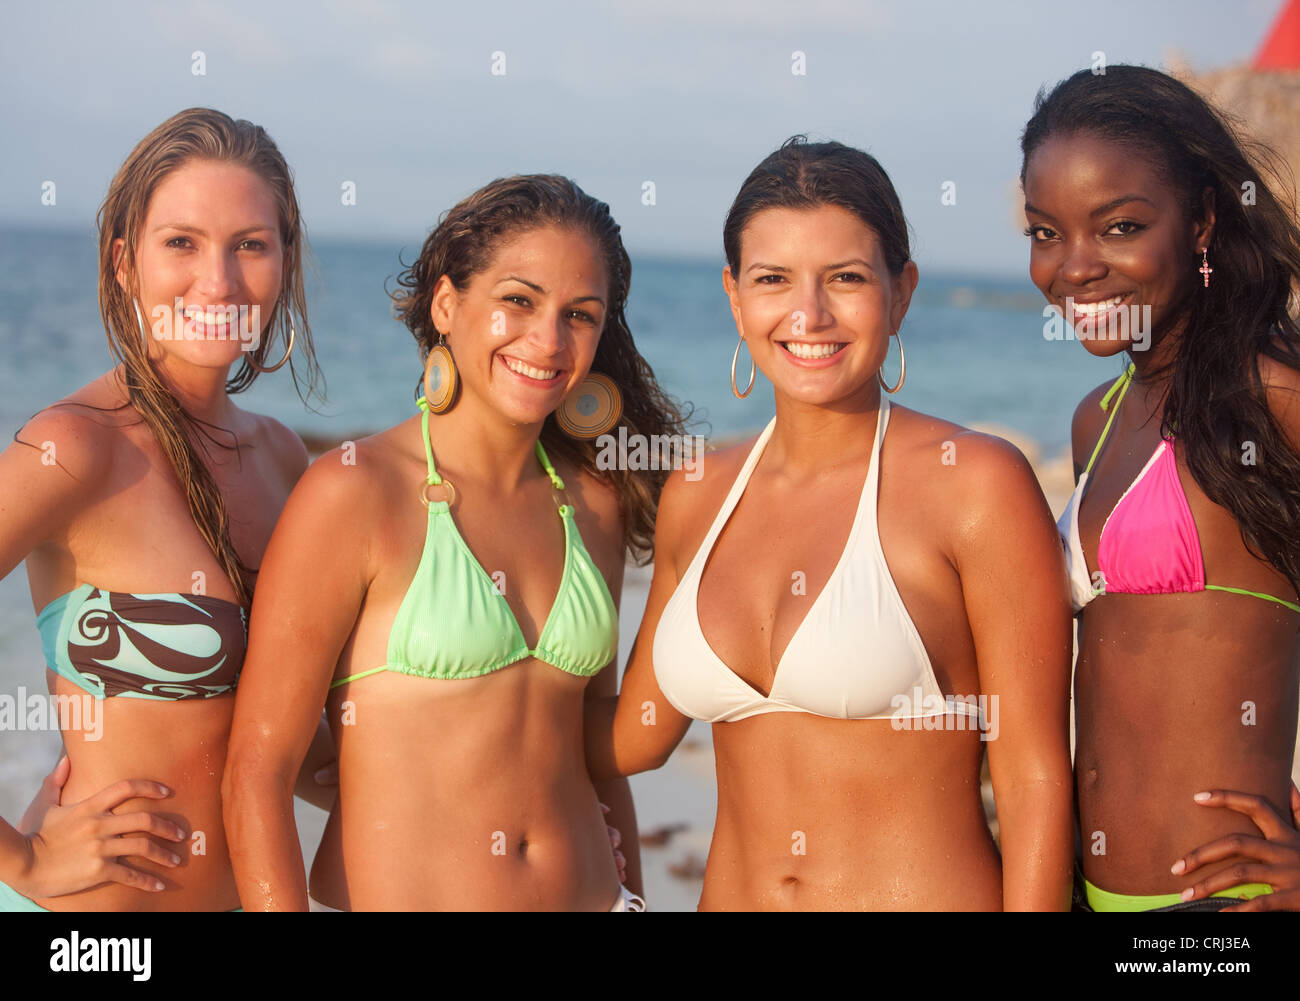 Frauen In Bikinis Fotos Und Bildmaterial In Hoher Aufl Sung Alamy